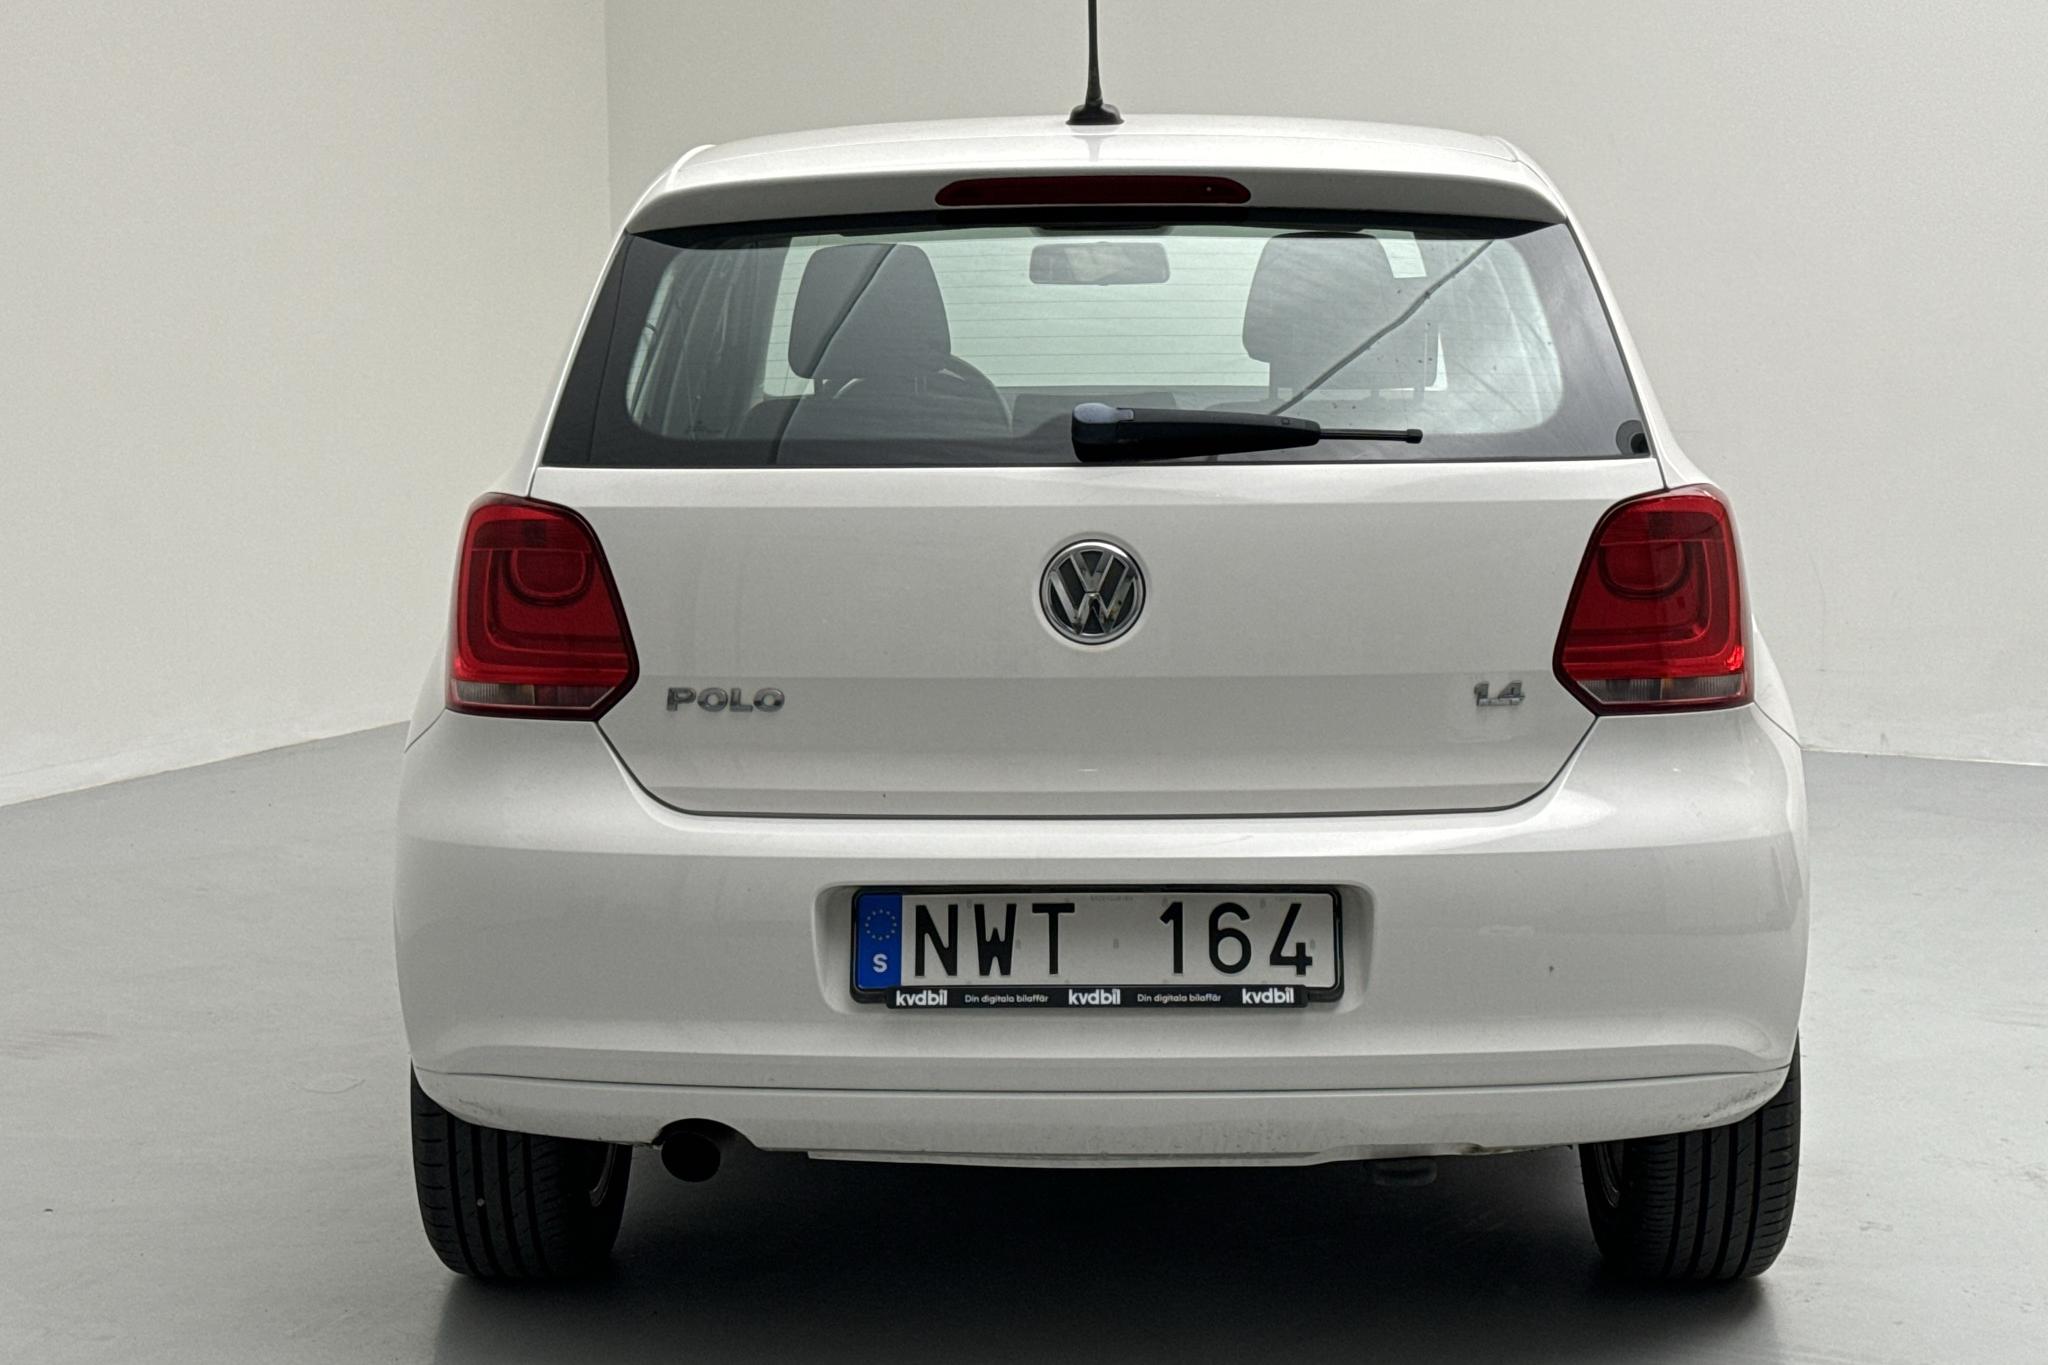 VW Polo 1.4 5dr (85hk) - 5 729 mil - Manuell - vit - 2014